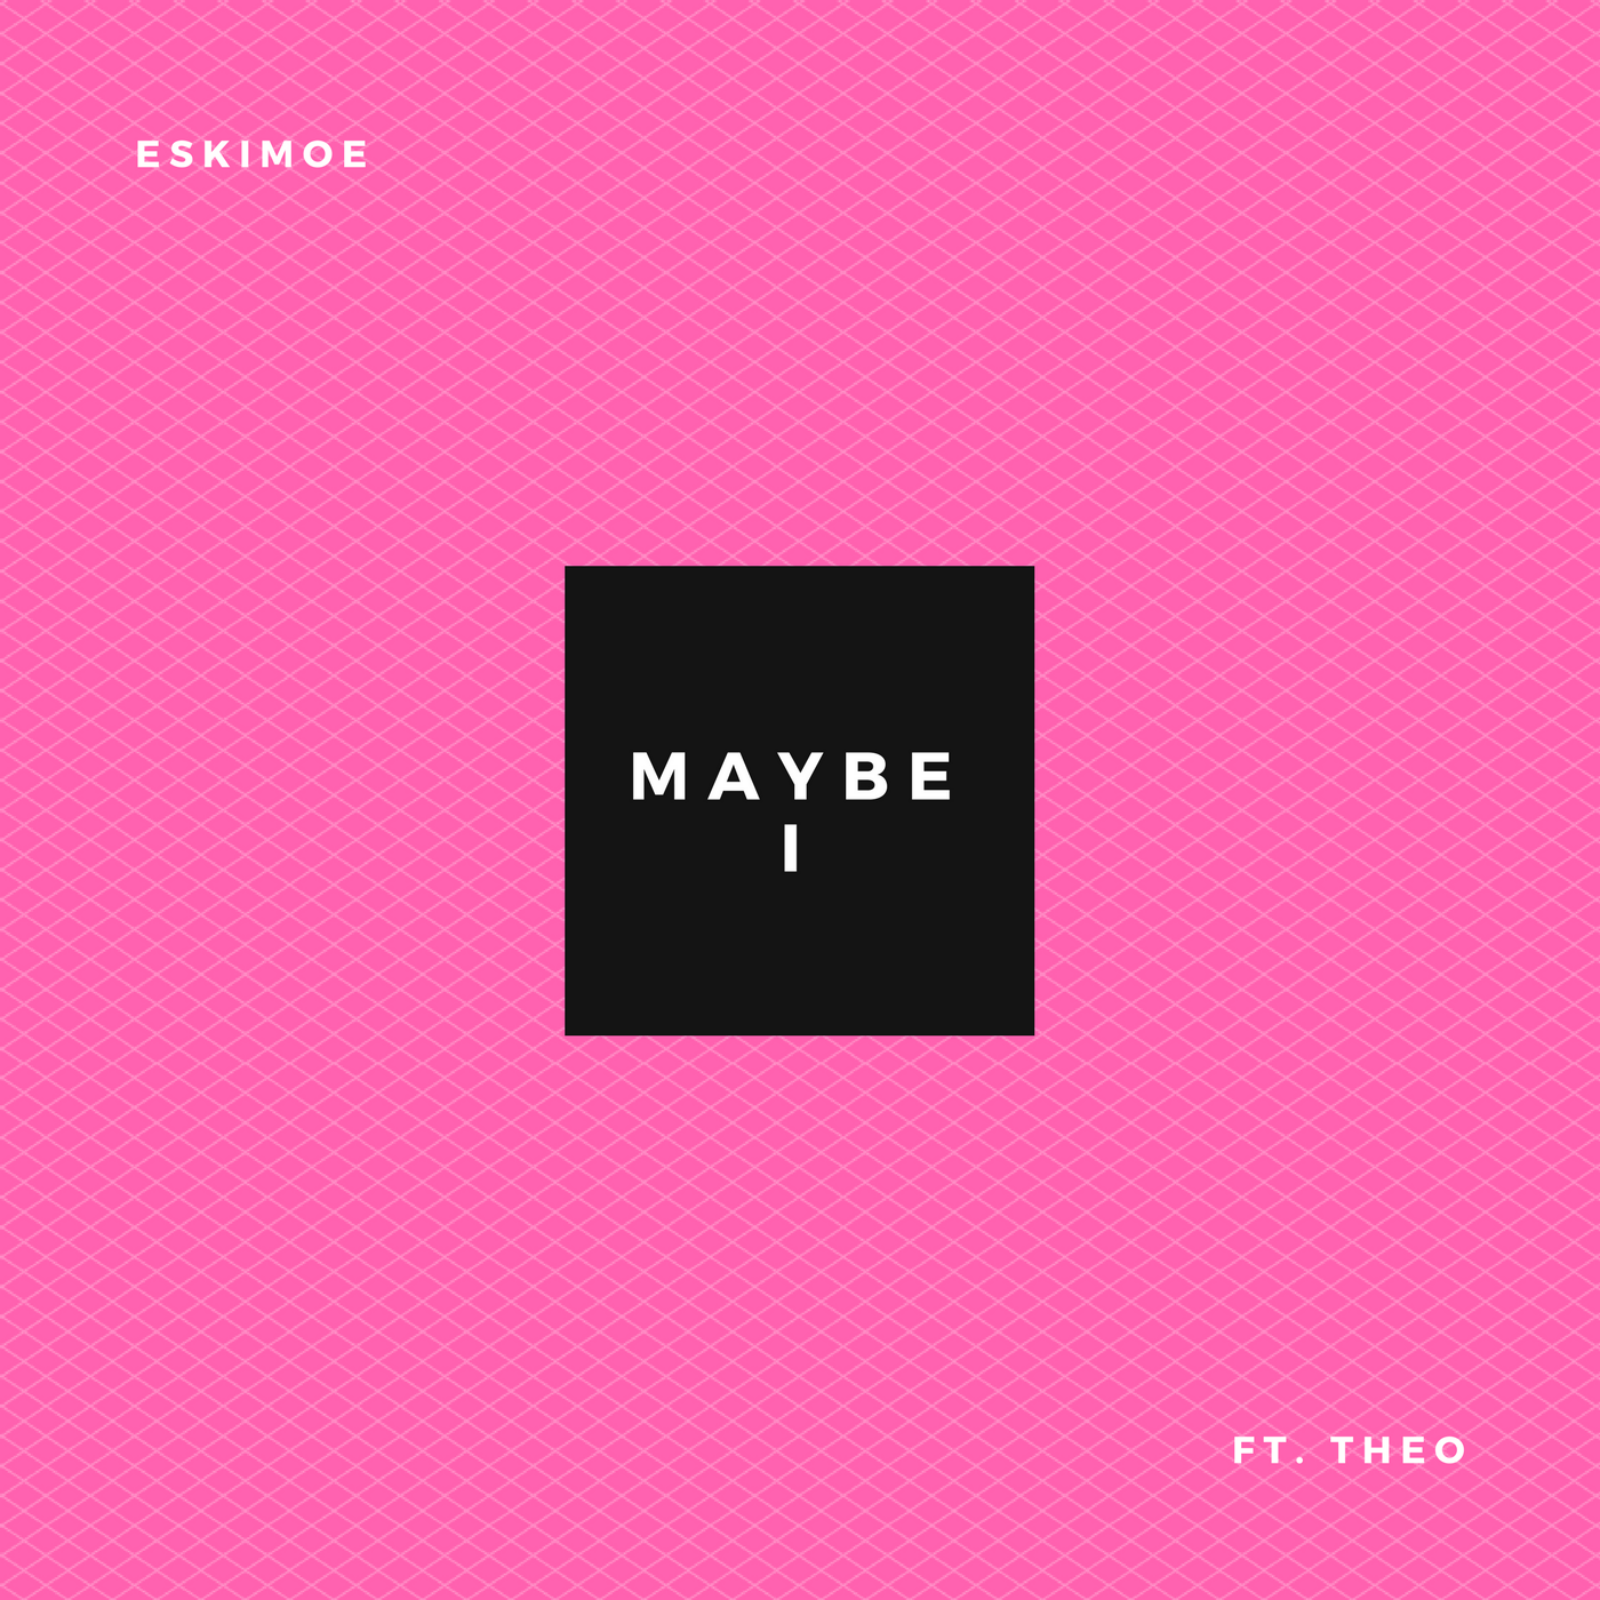 ESKIMOE - 'MAYBE I' (FT. THEO)